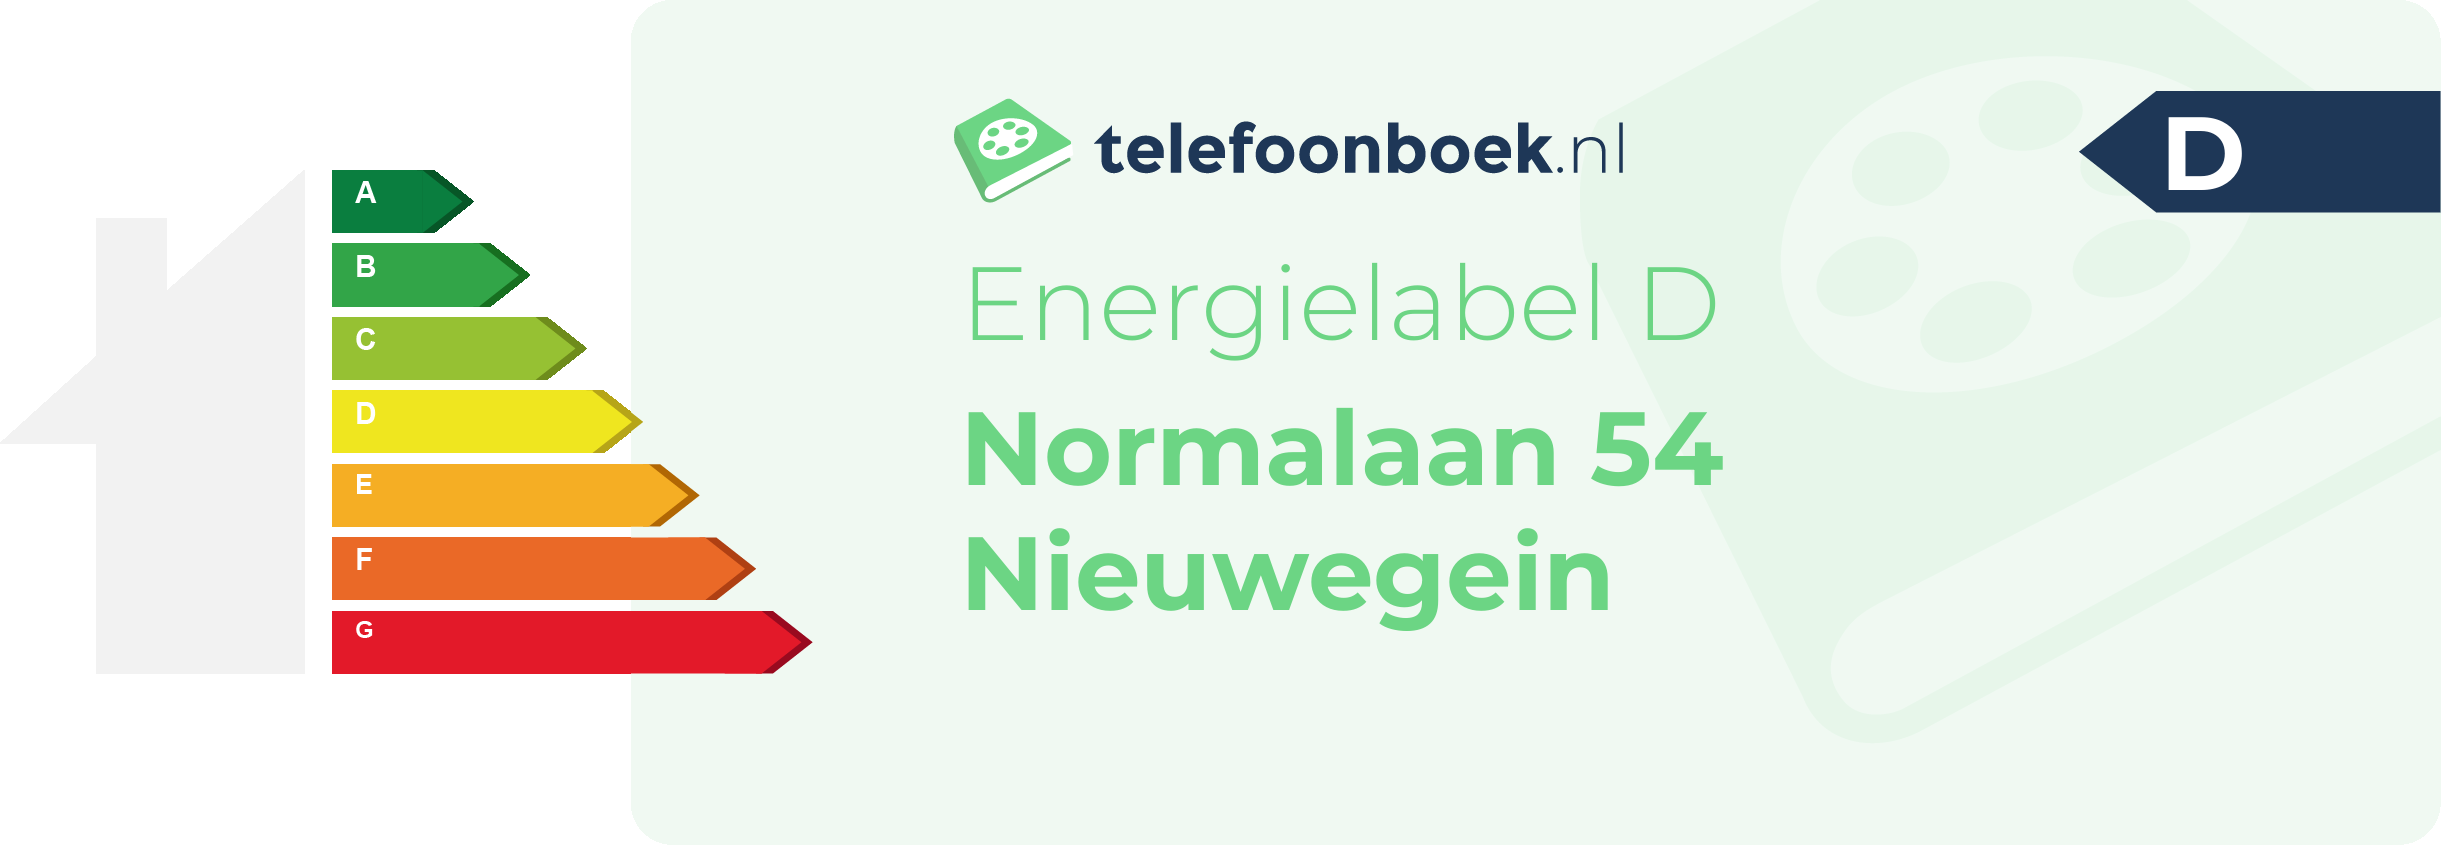 Energielabel Normalaan 54 Nieuwegein